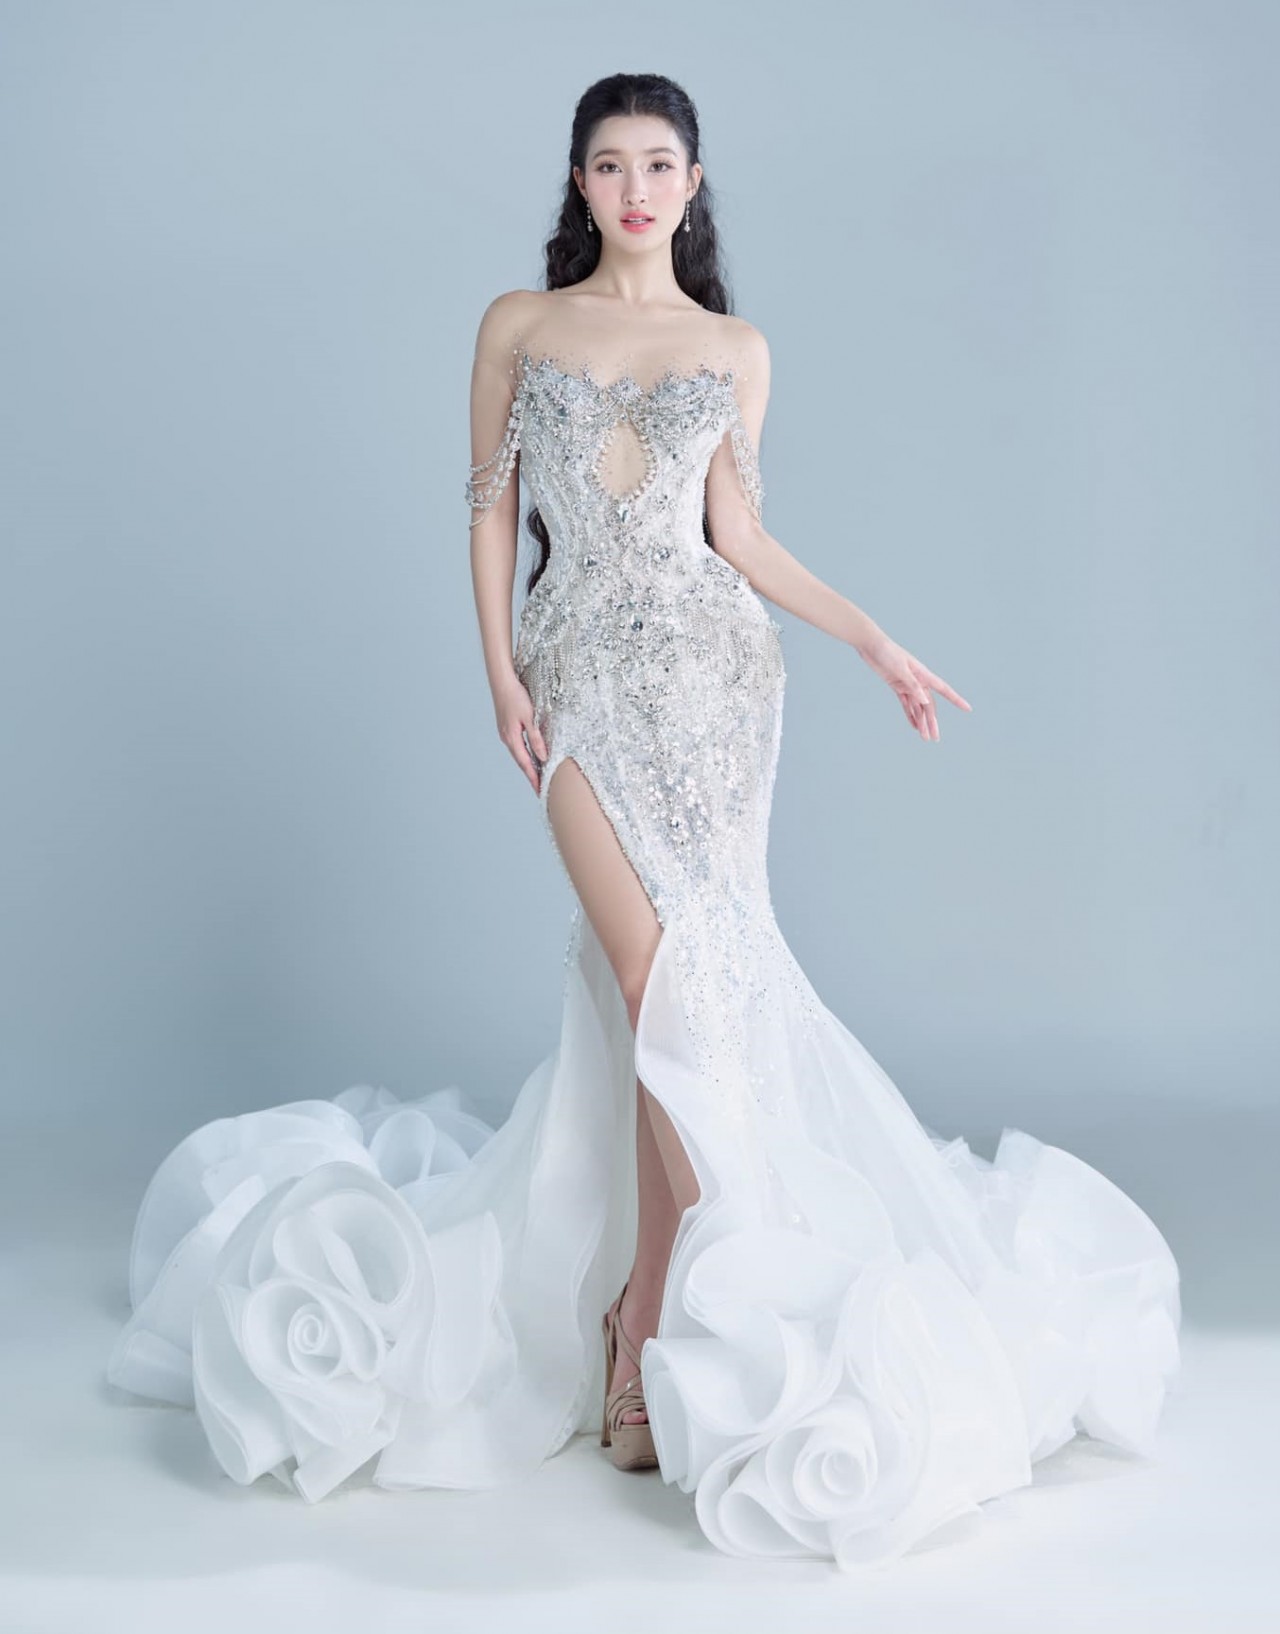 Đêm chung kết Hoa hậu Quốc tế 2023: Á hậu Phương Nhi hé lộ hai thiết kế trang phục dạ hội màu trắng